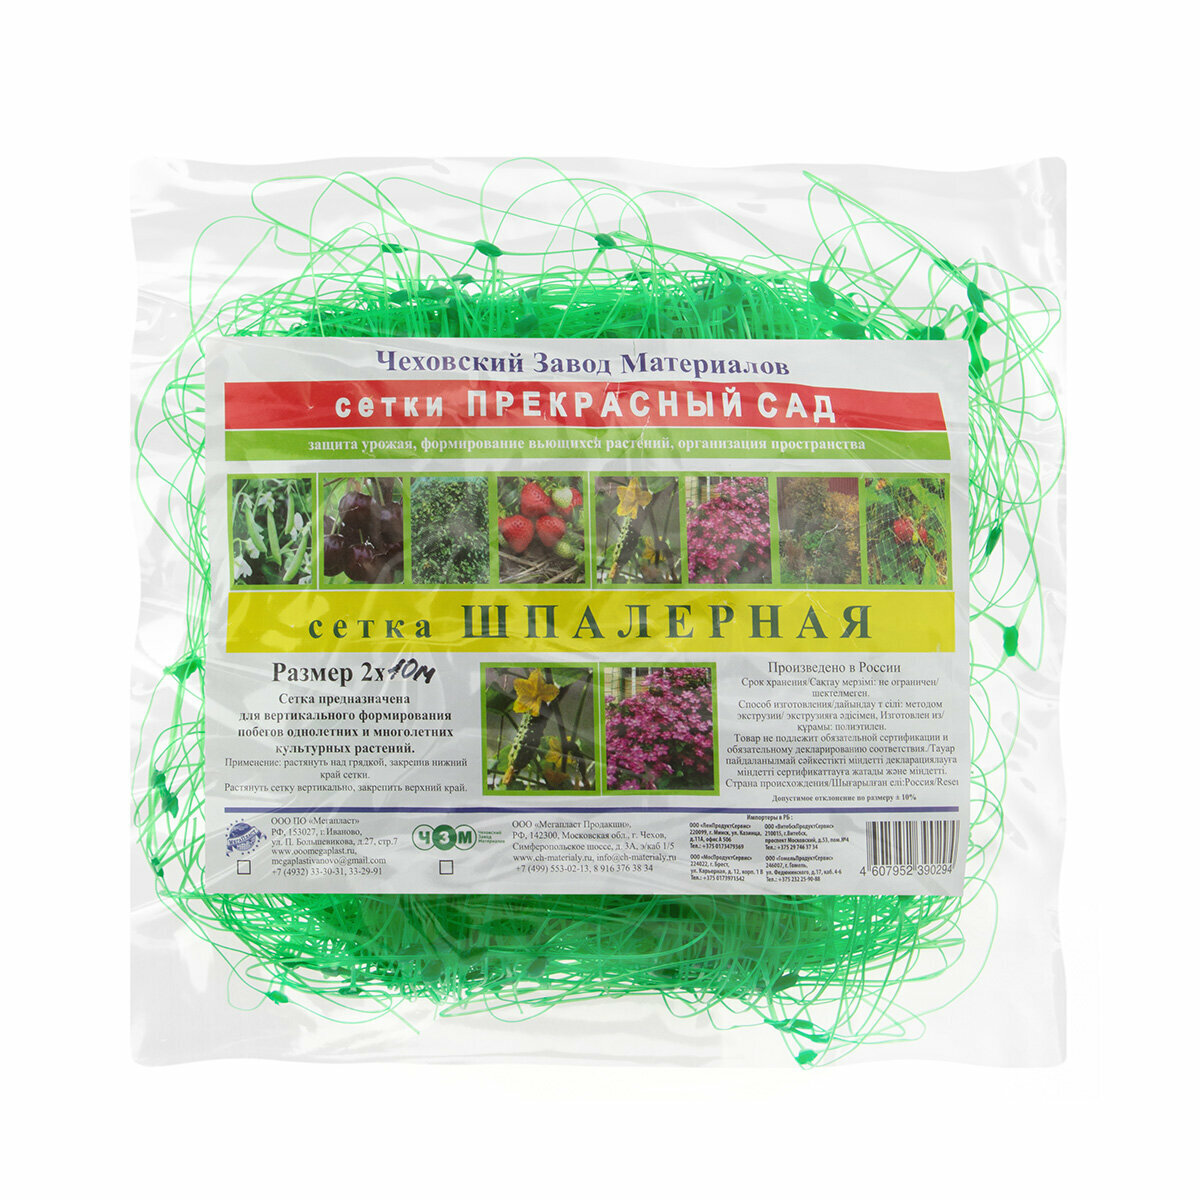 Шпалерная сетка для вьющихся растений и огурцов 2х5м ячейки 15х17см зеленый (Россия)